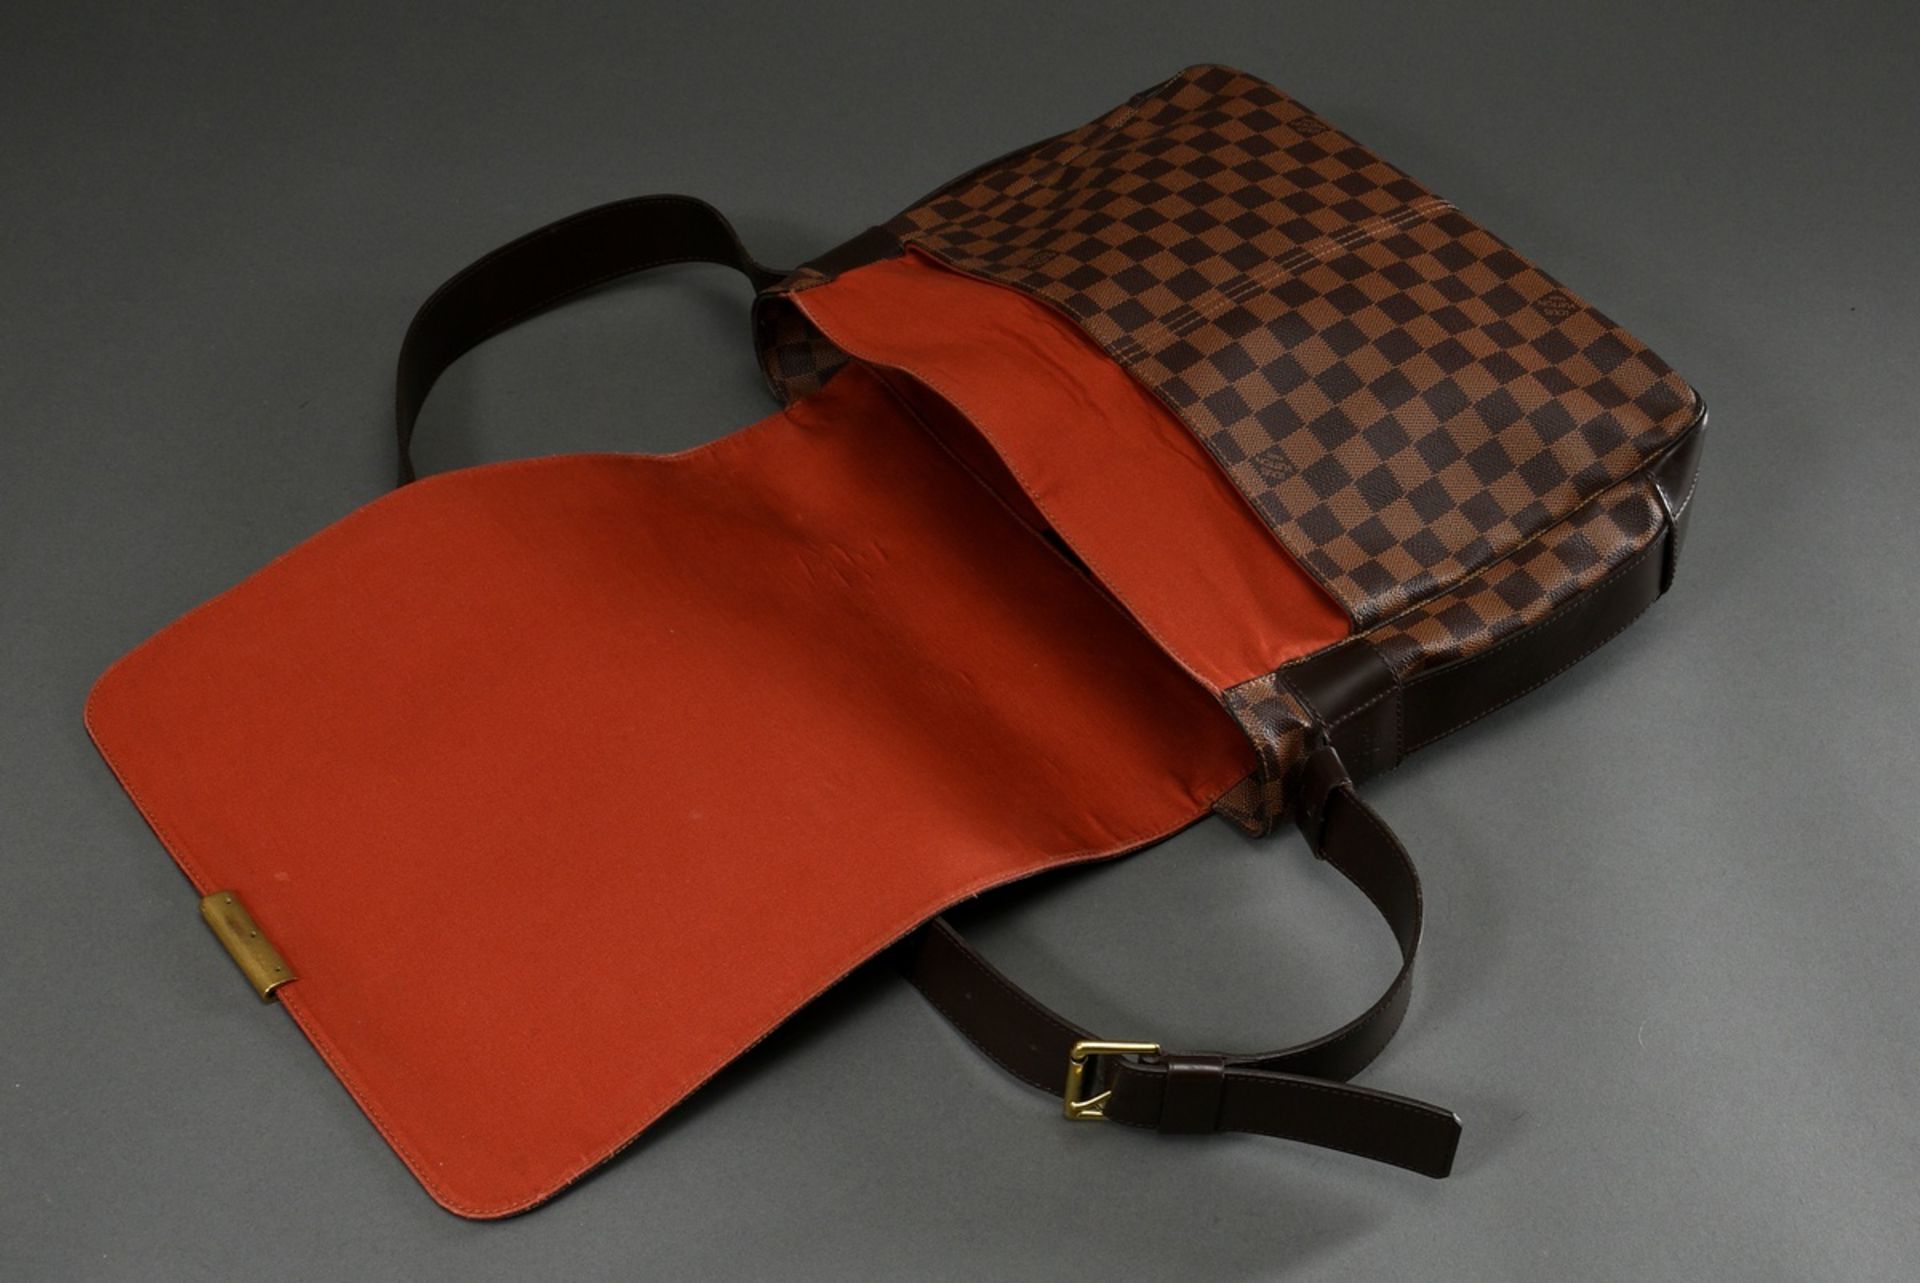 Louis Vuitton vintage "Bastille" messenger bag in damier level canvas with dark brown adjustable le - Image 3 of 8